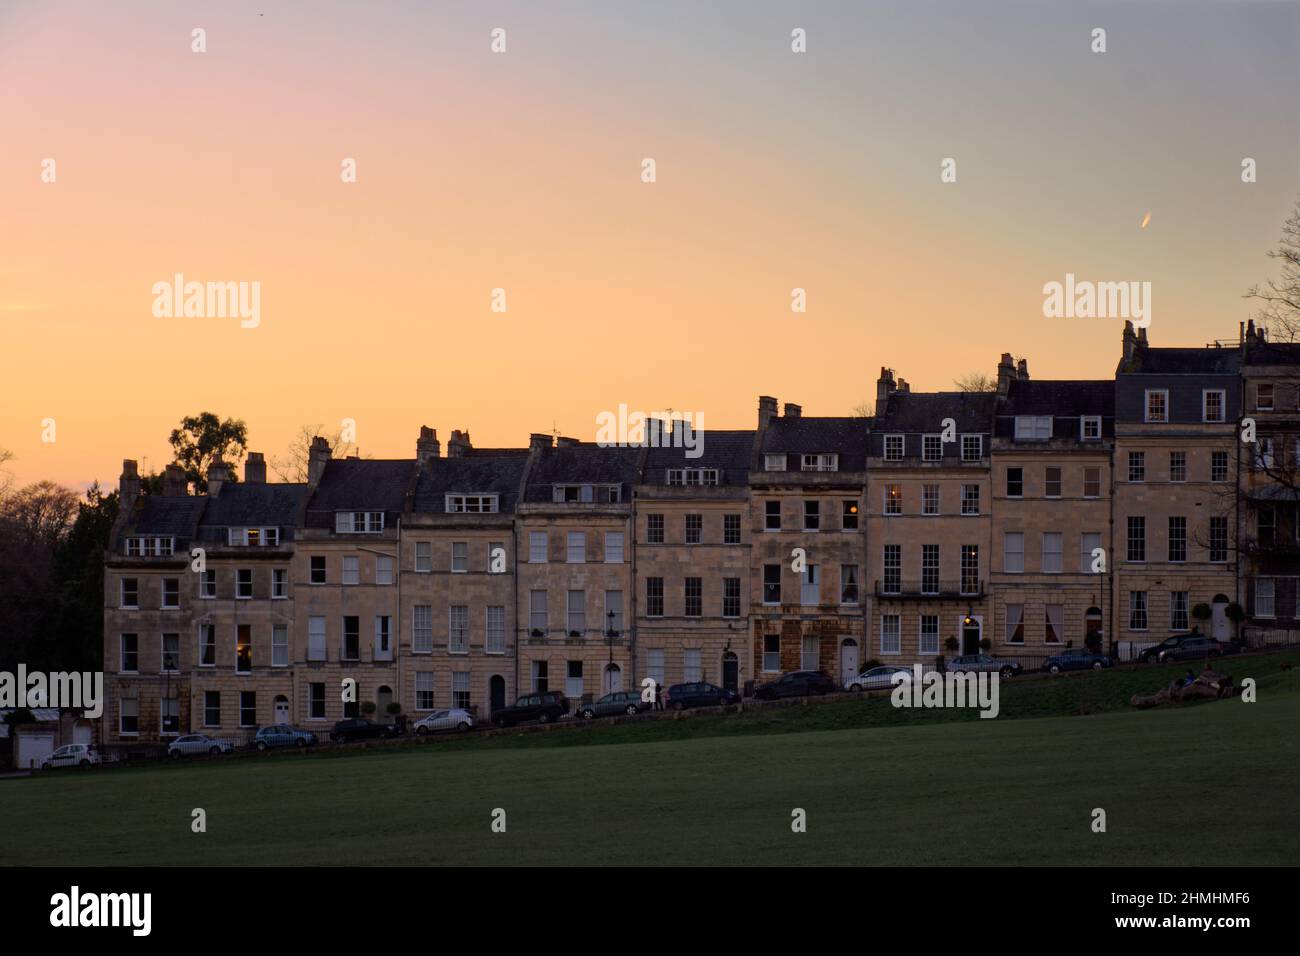 Edifici di Marlborough e tramonto invernale reale a mezzaluna Foto Stock